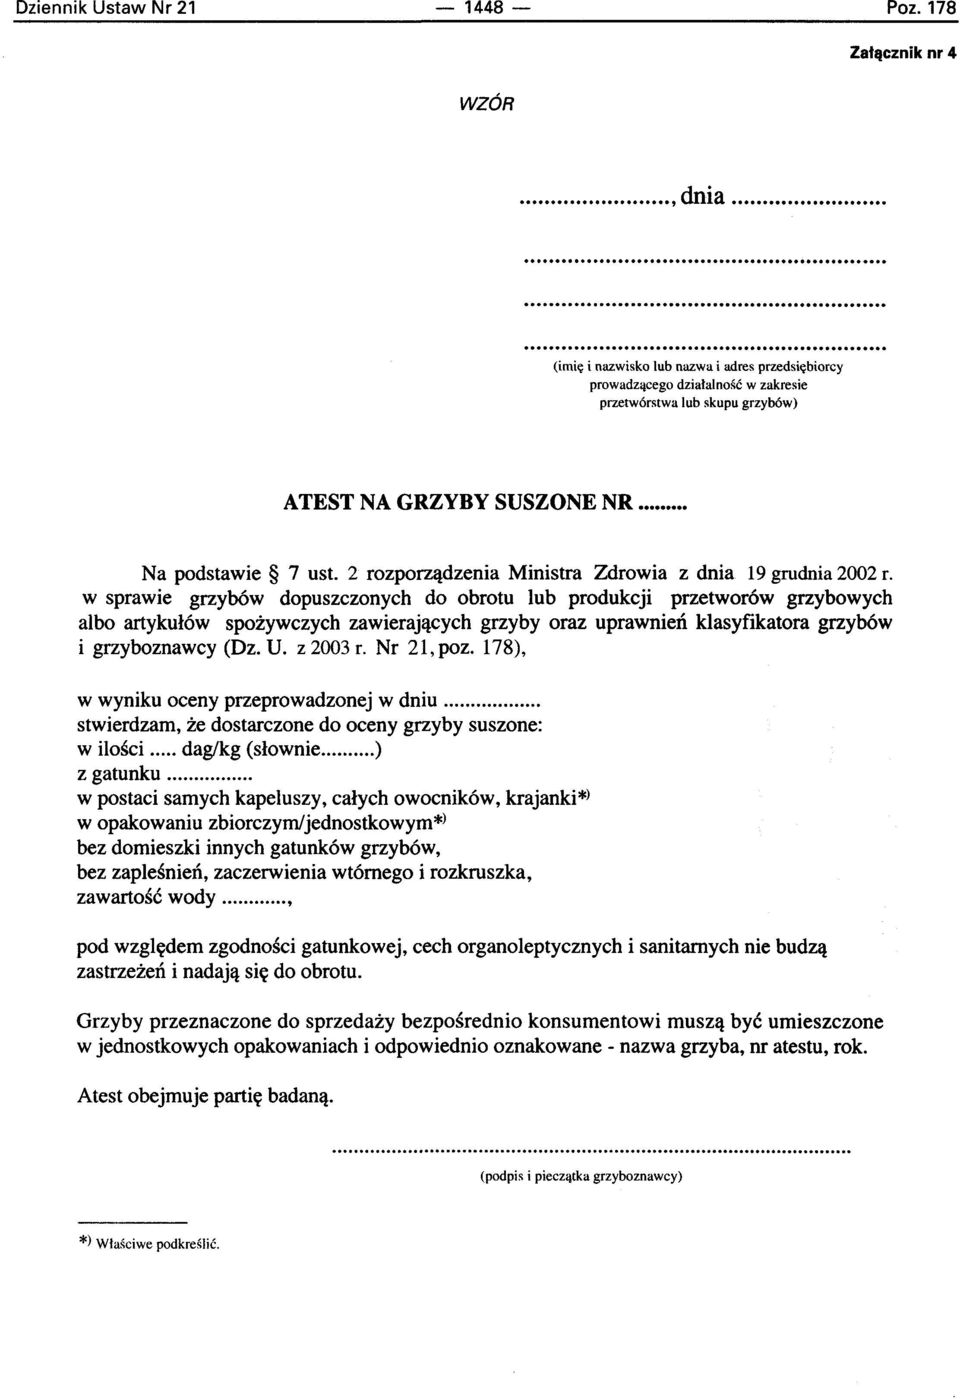 2 rozporzadzenia Ministra Zdrowia z dnia 19 grudnia 2002 f.